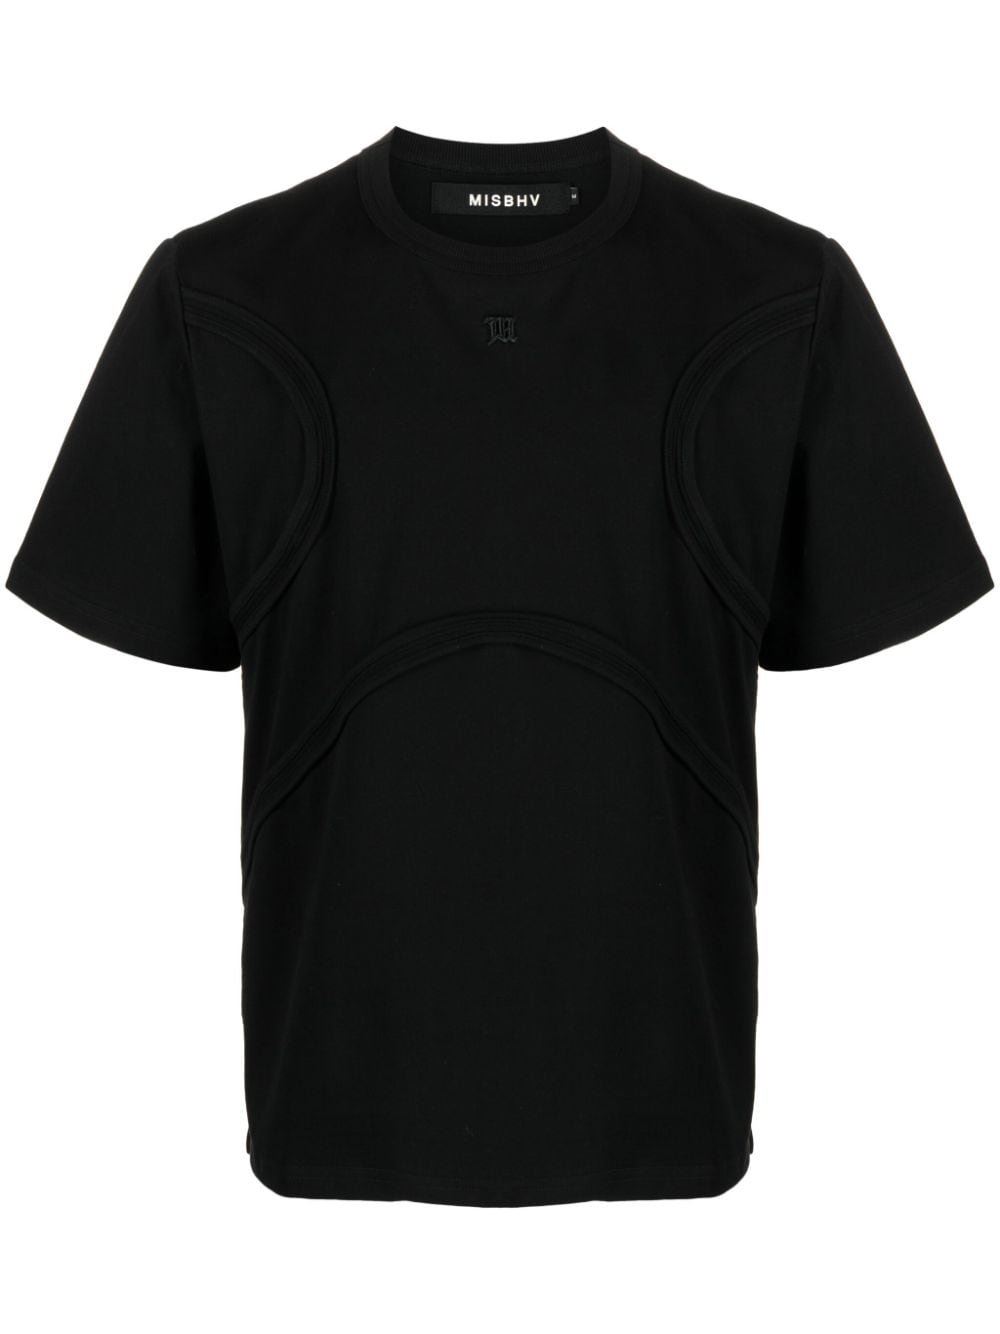 misbhv t-shirt en coton à logo brodé - noir